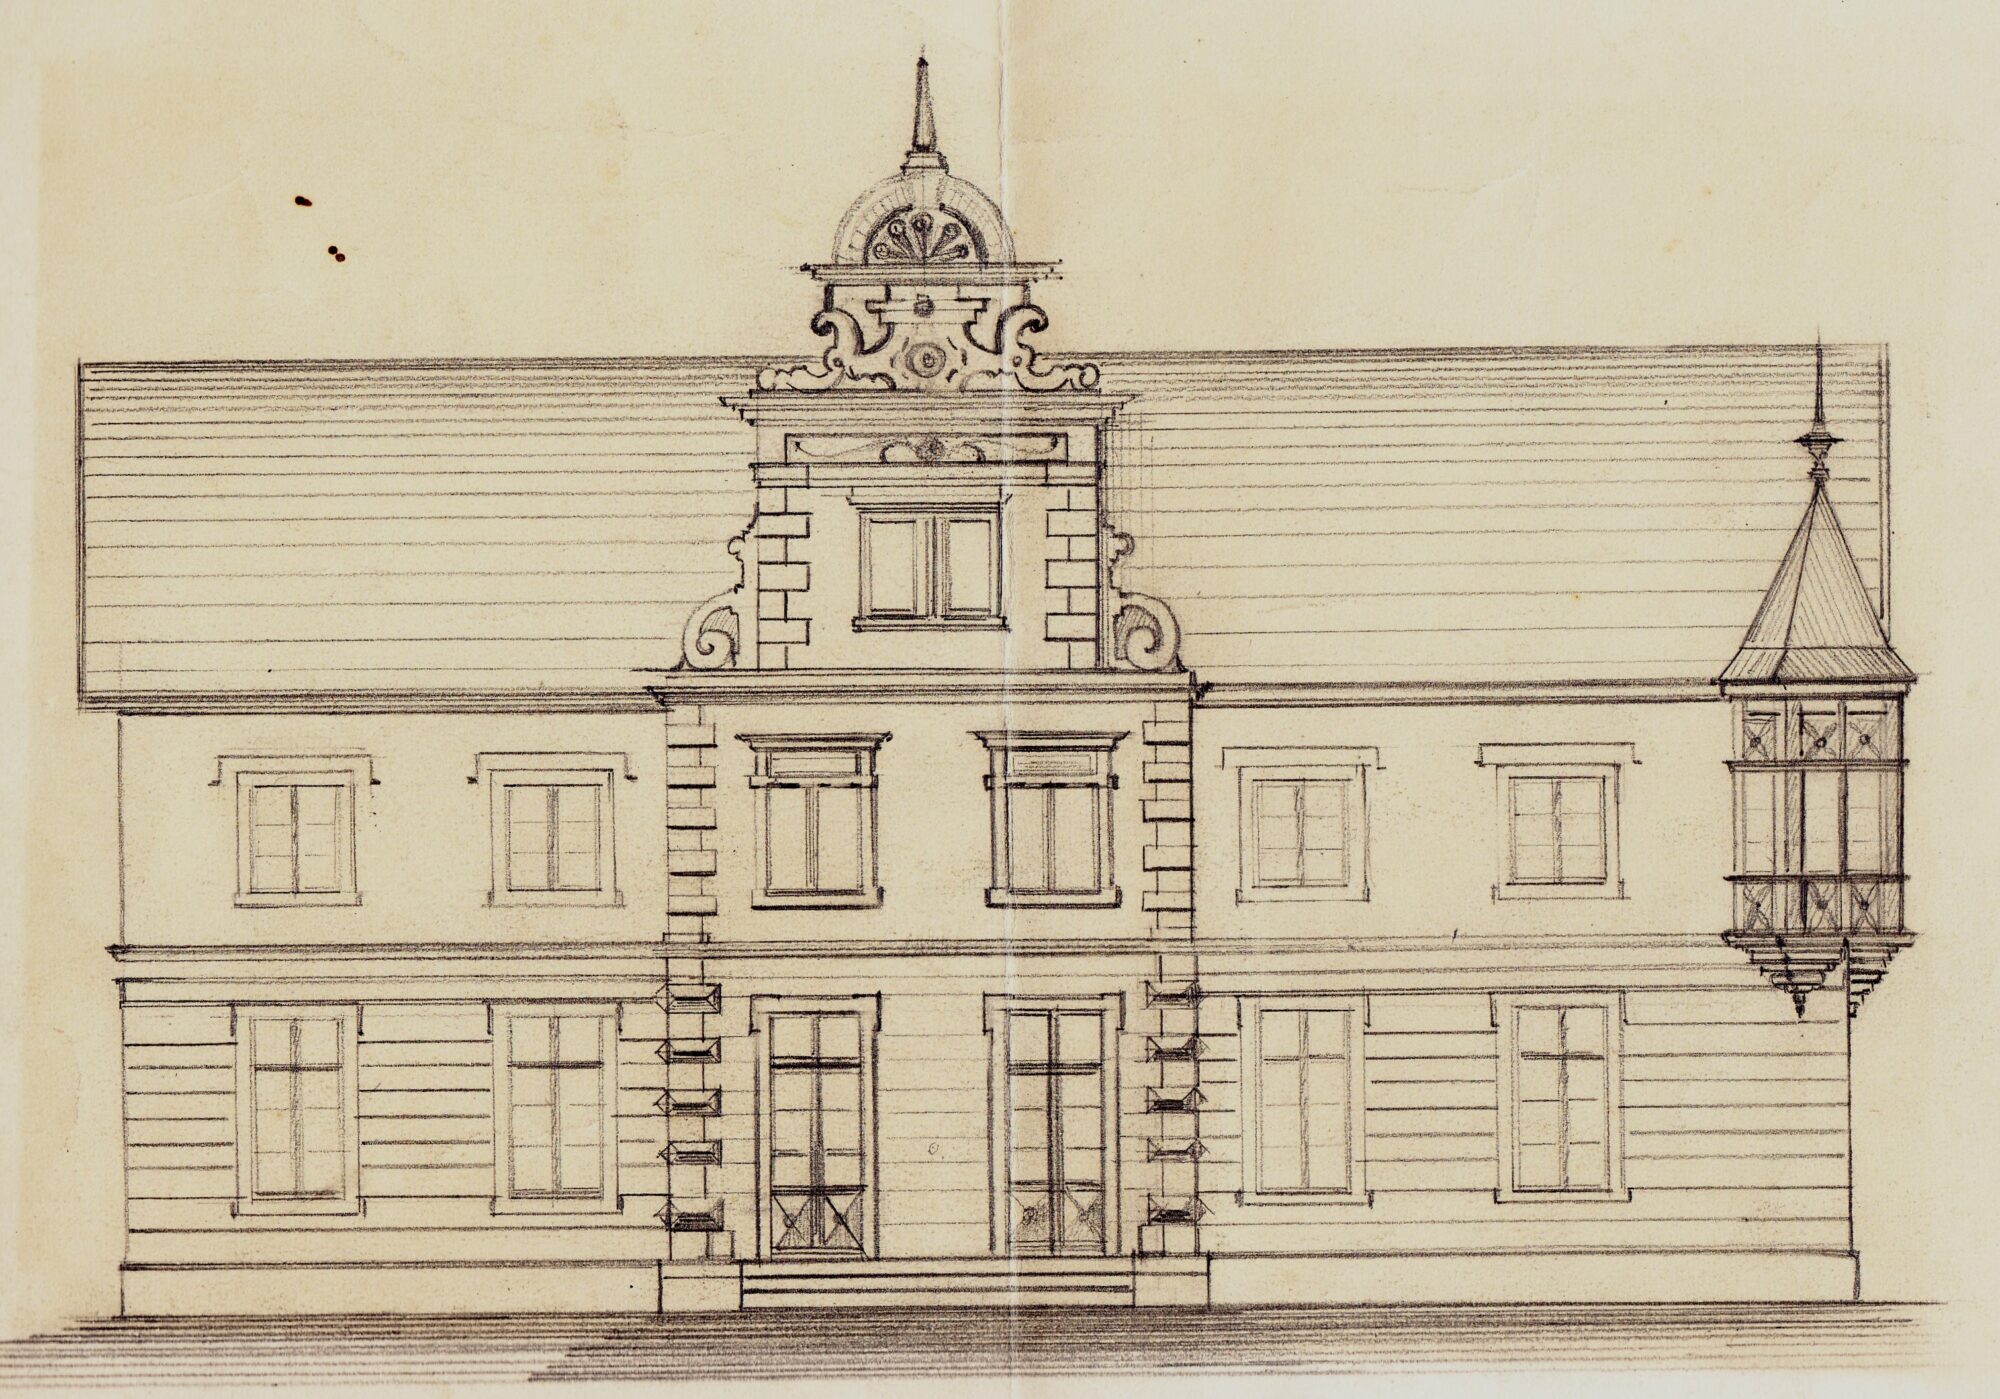 Abb. 2: Skizze zum Umbau des Stadthauses von Gerhard Lühn, wohl 1905. Der Plan ist niemals realisiert worden.